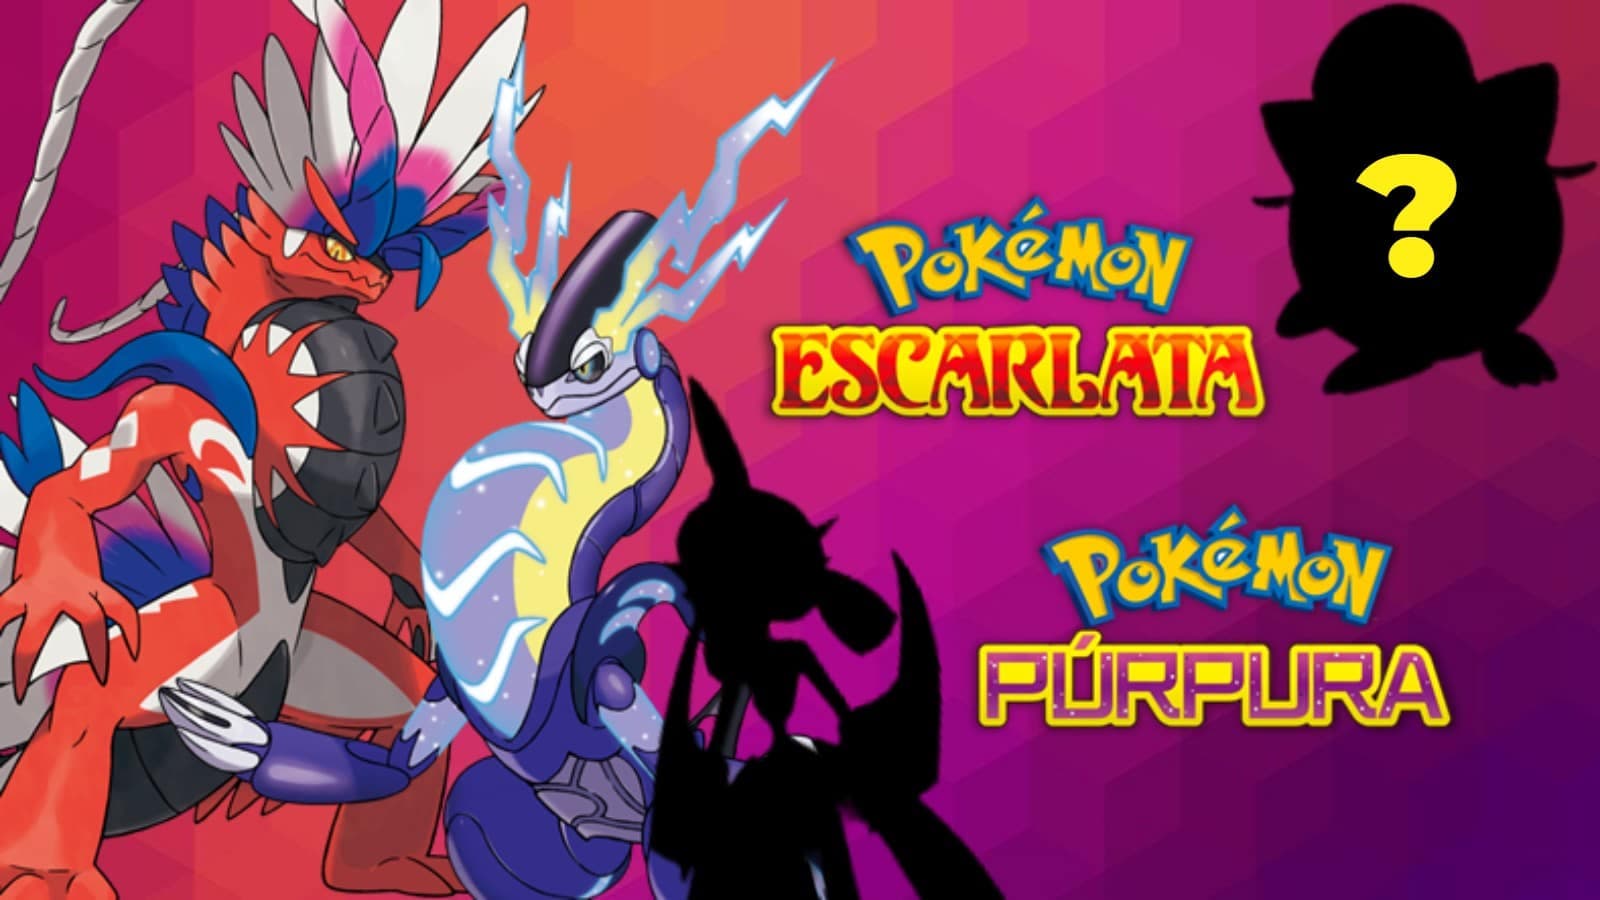 TODOS los Pokémon Paradoja de Escarlata y Púrpura y cómo conseguirlos